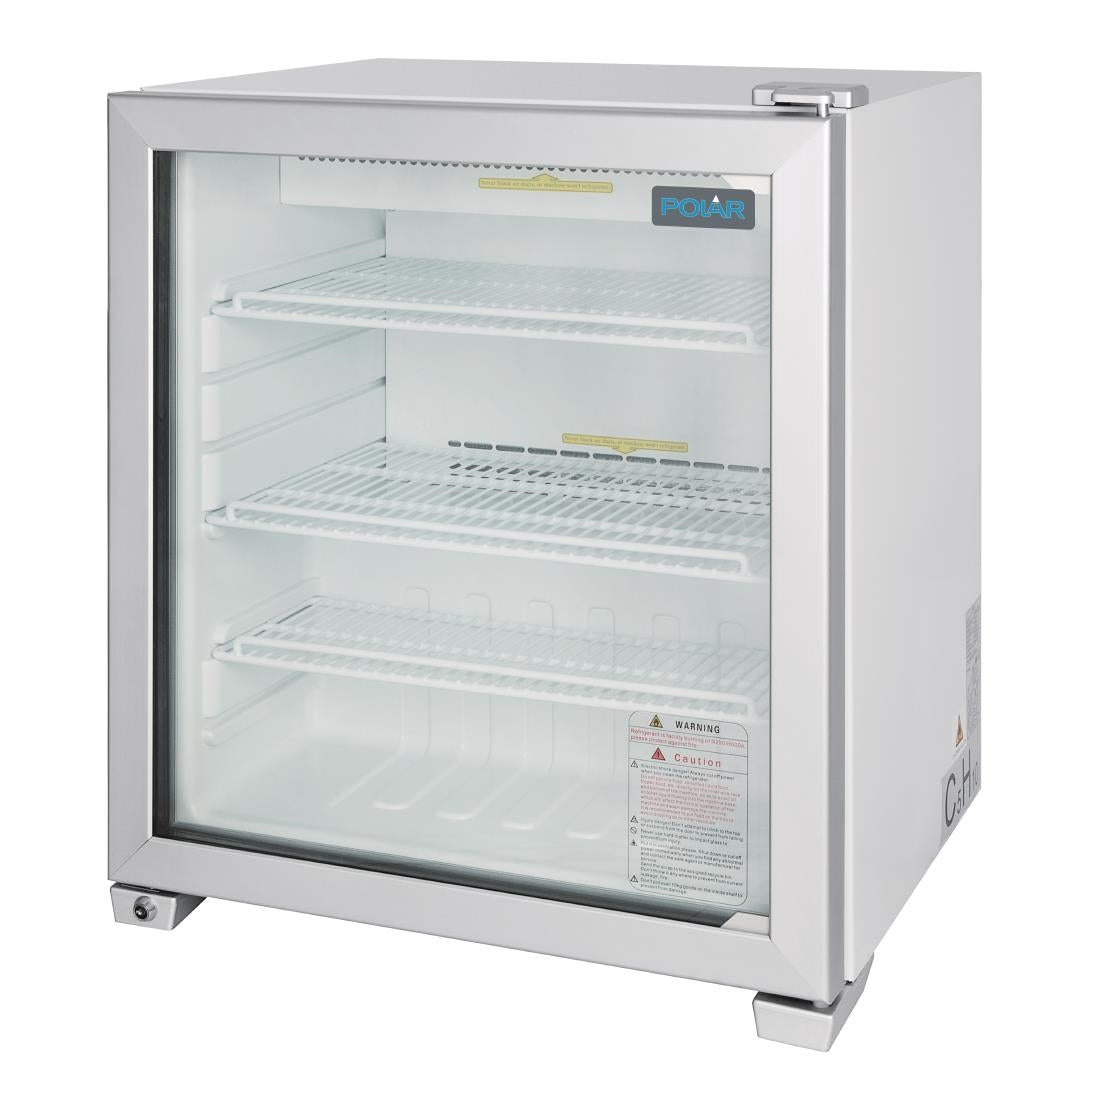 GC889 Polar G-Series Countertop Display Freezer